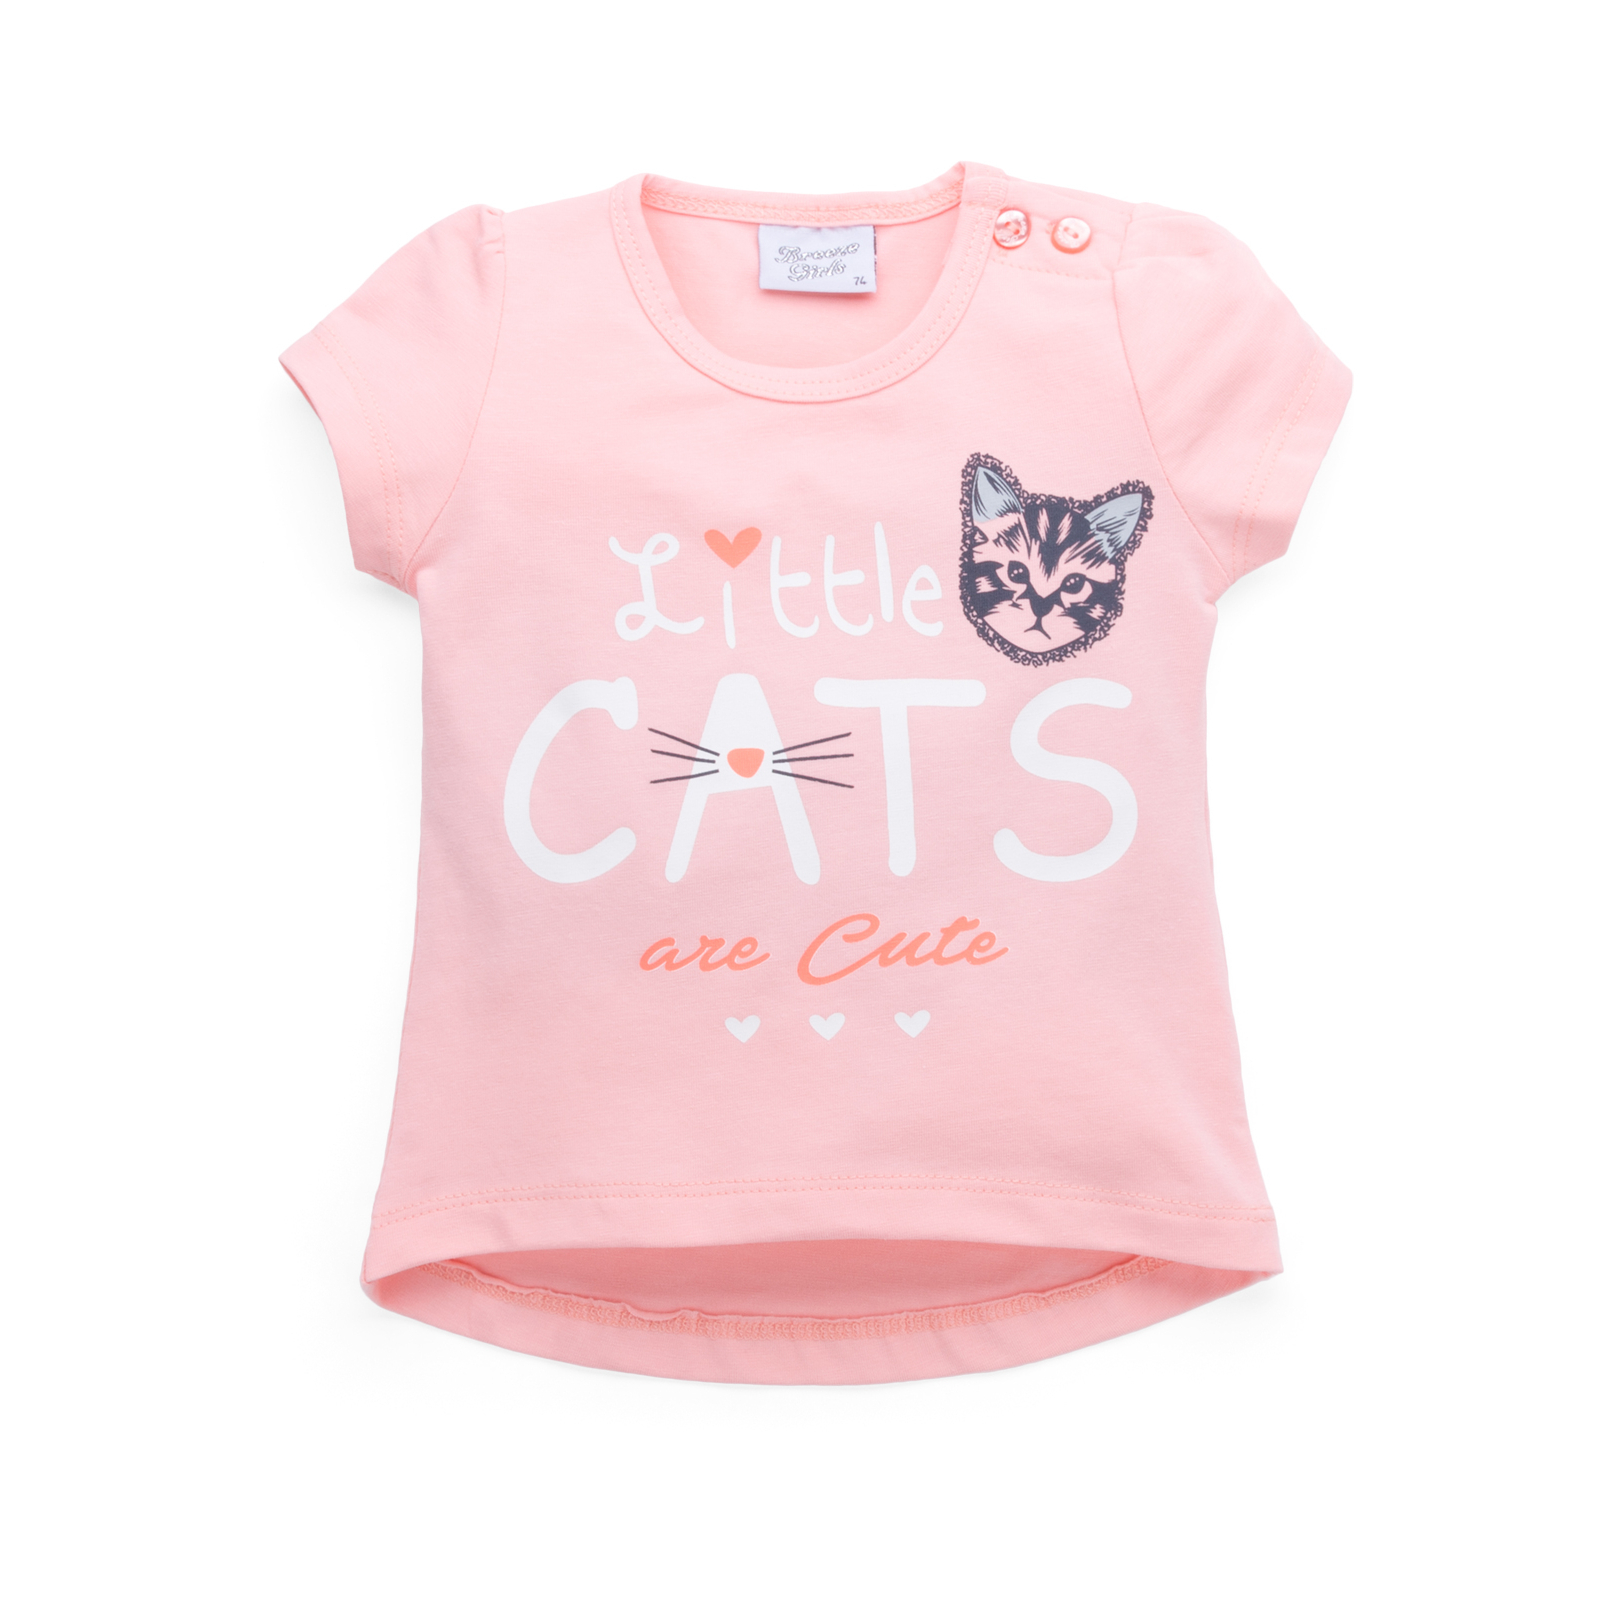 Набор детской одежды Breeze футболка с котиком и штанишки с кармашками (8983-92G-cream) изображение 2